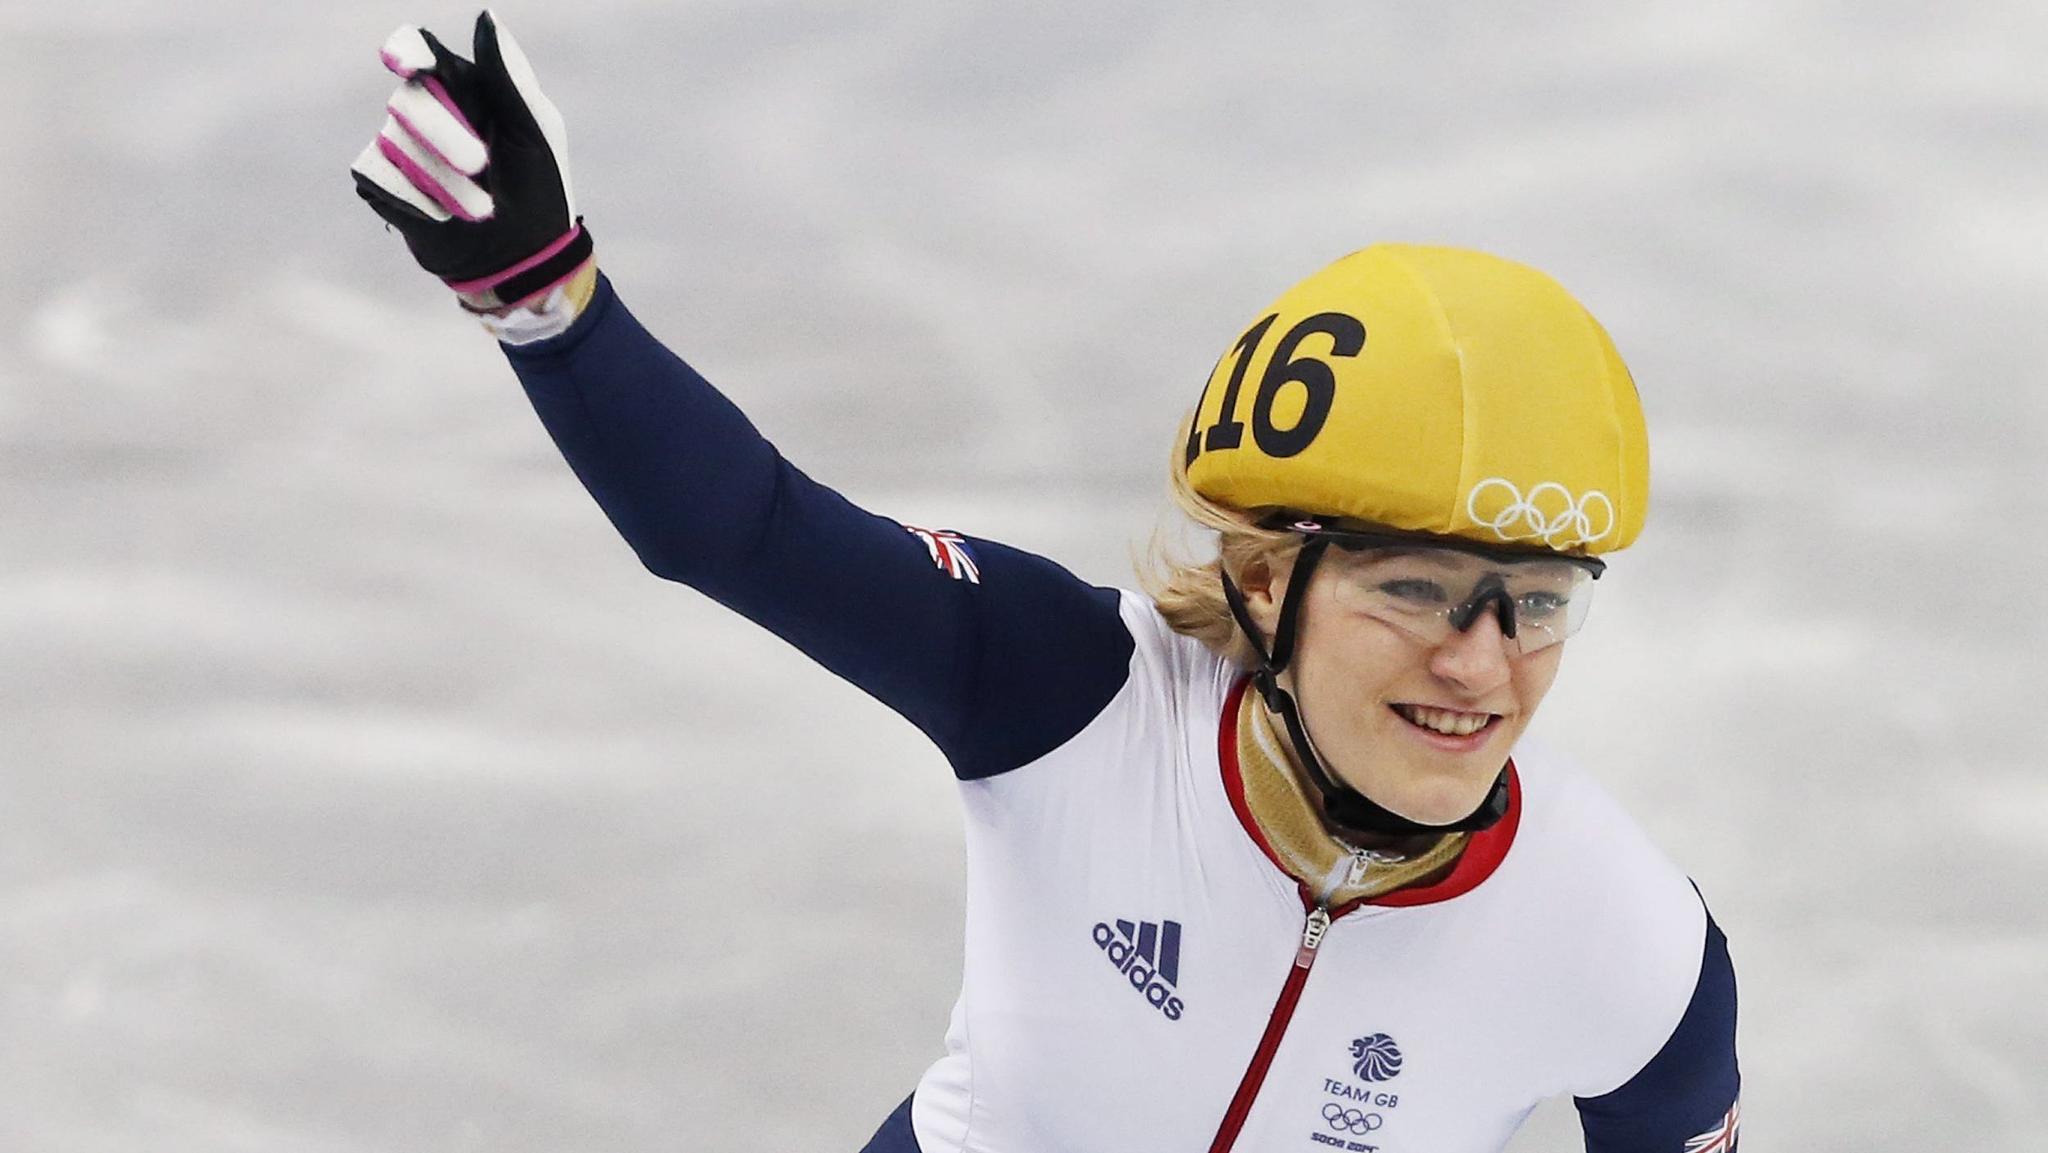 Elise Christie comemora após vencer sua corrida de quartas-de-final nos 1000 metros nos Jogos Olímpicos de Sochi, em 2014.